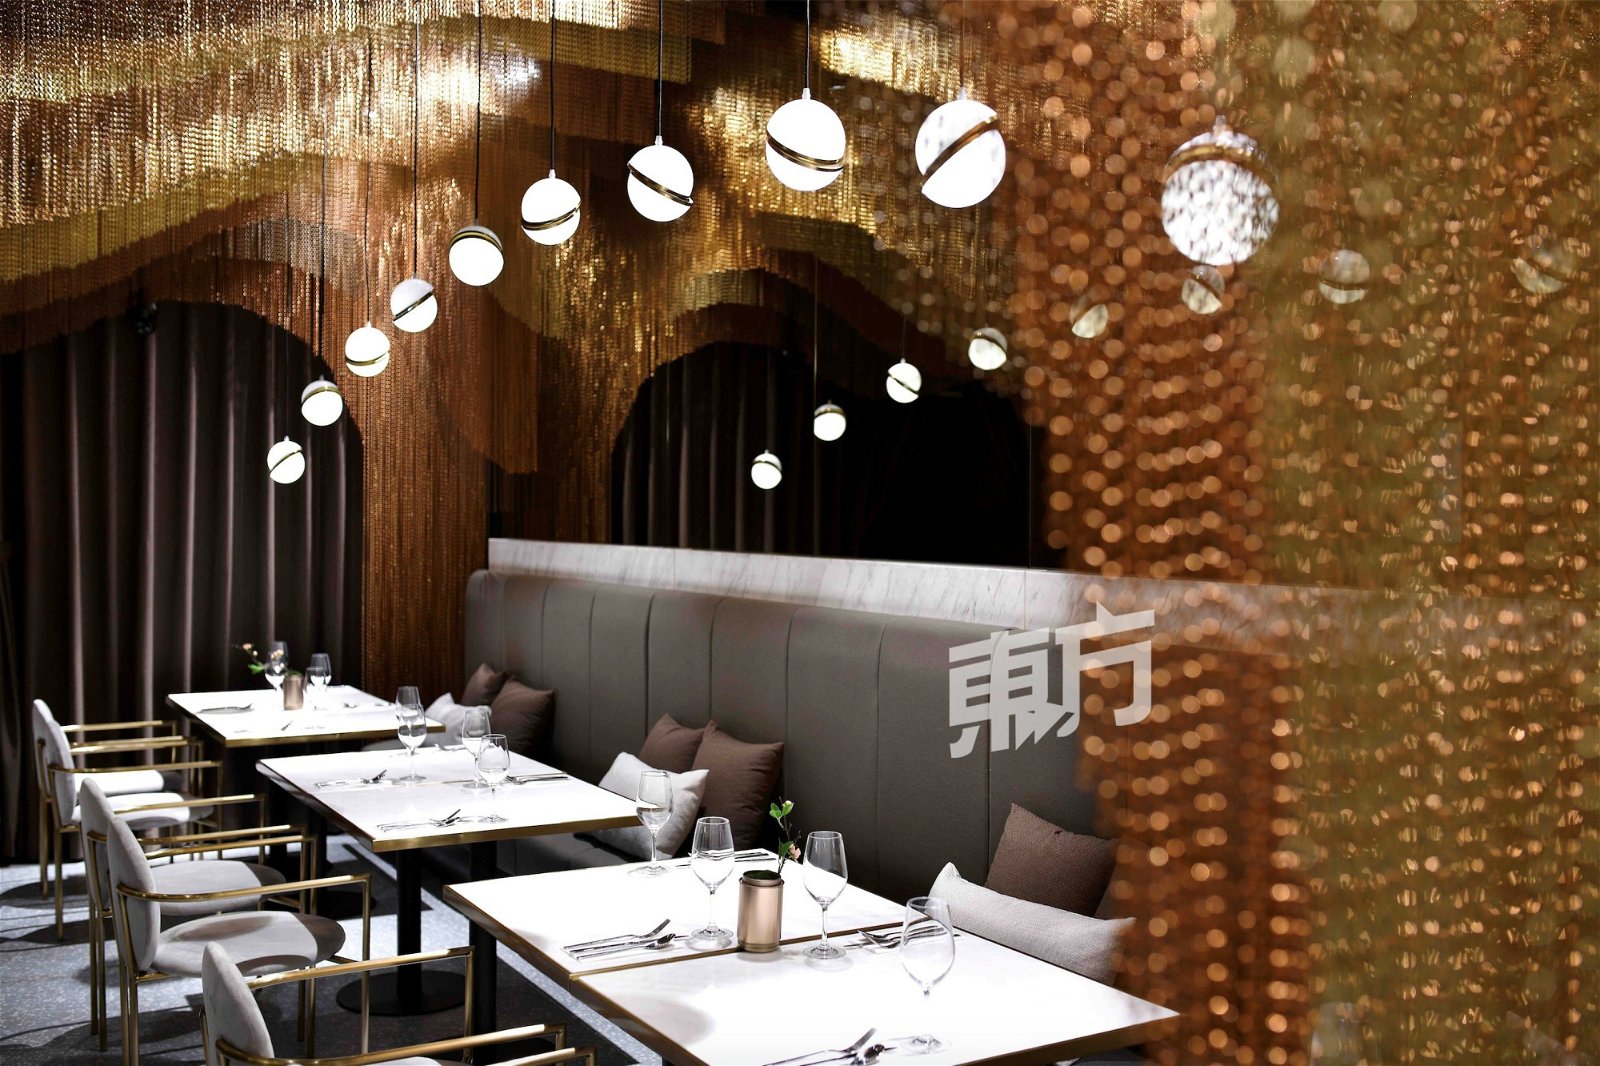 位于中国的Icha餐厅以三种不同色调的金属构成高低不一的天花板设计，宛如山区茶田。